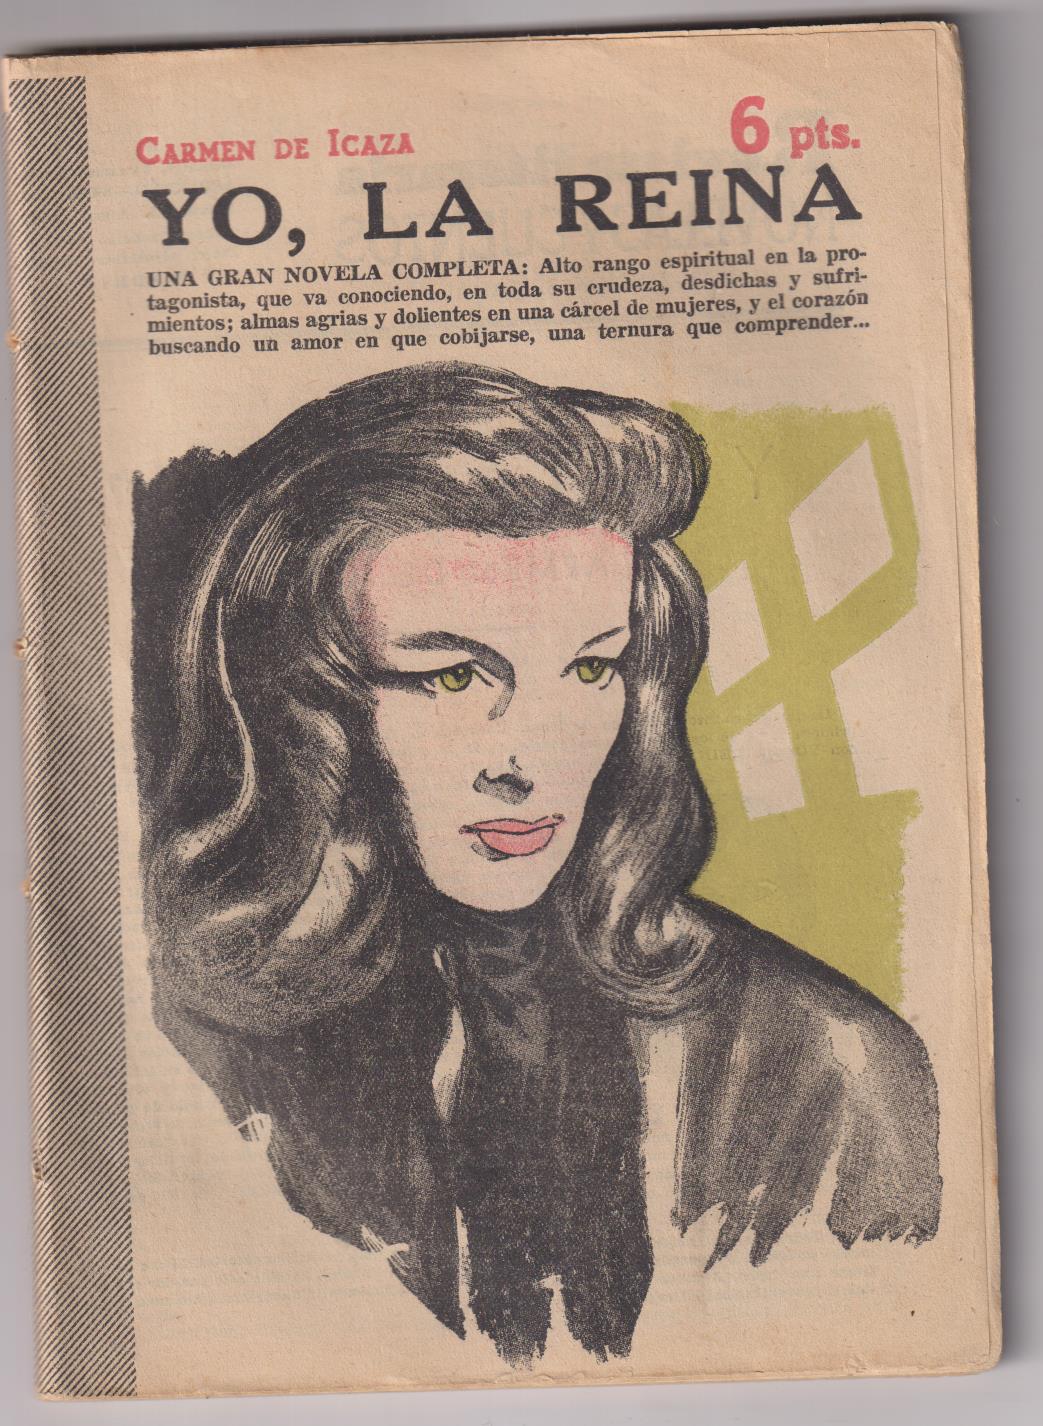 Revista Literaria Novelas y Cuentos nº 1243. Yo, La Reina por Carmen de Icaza, año 1955